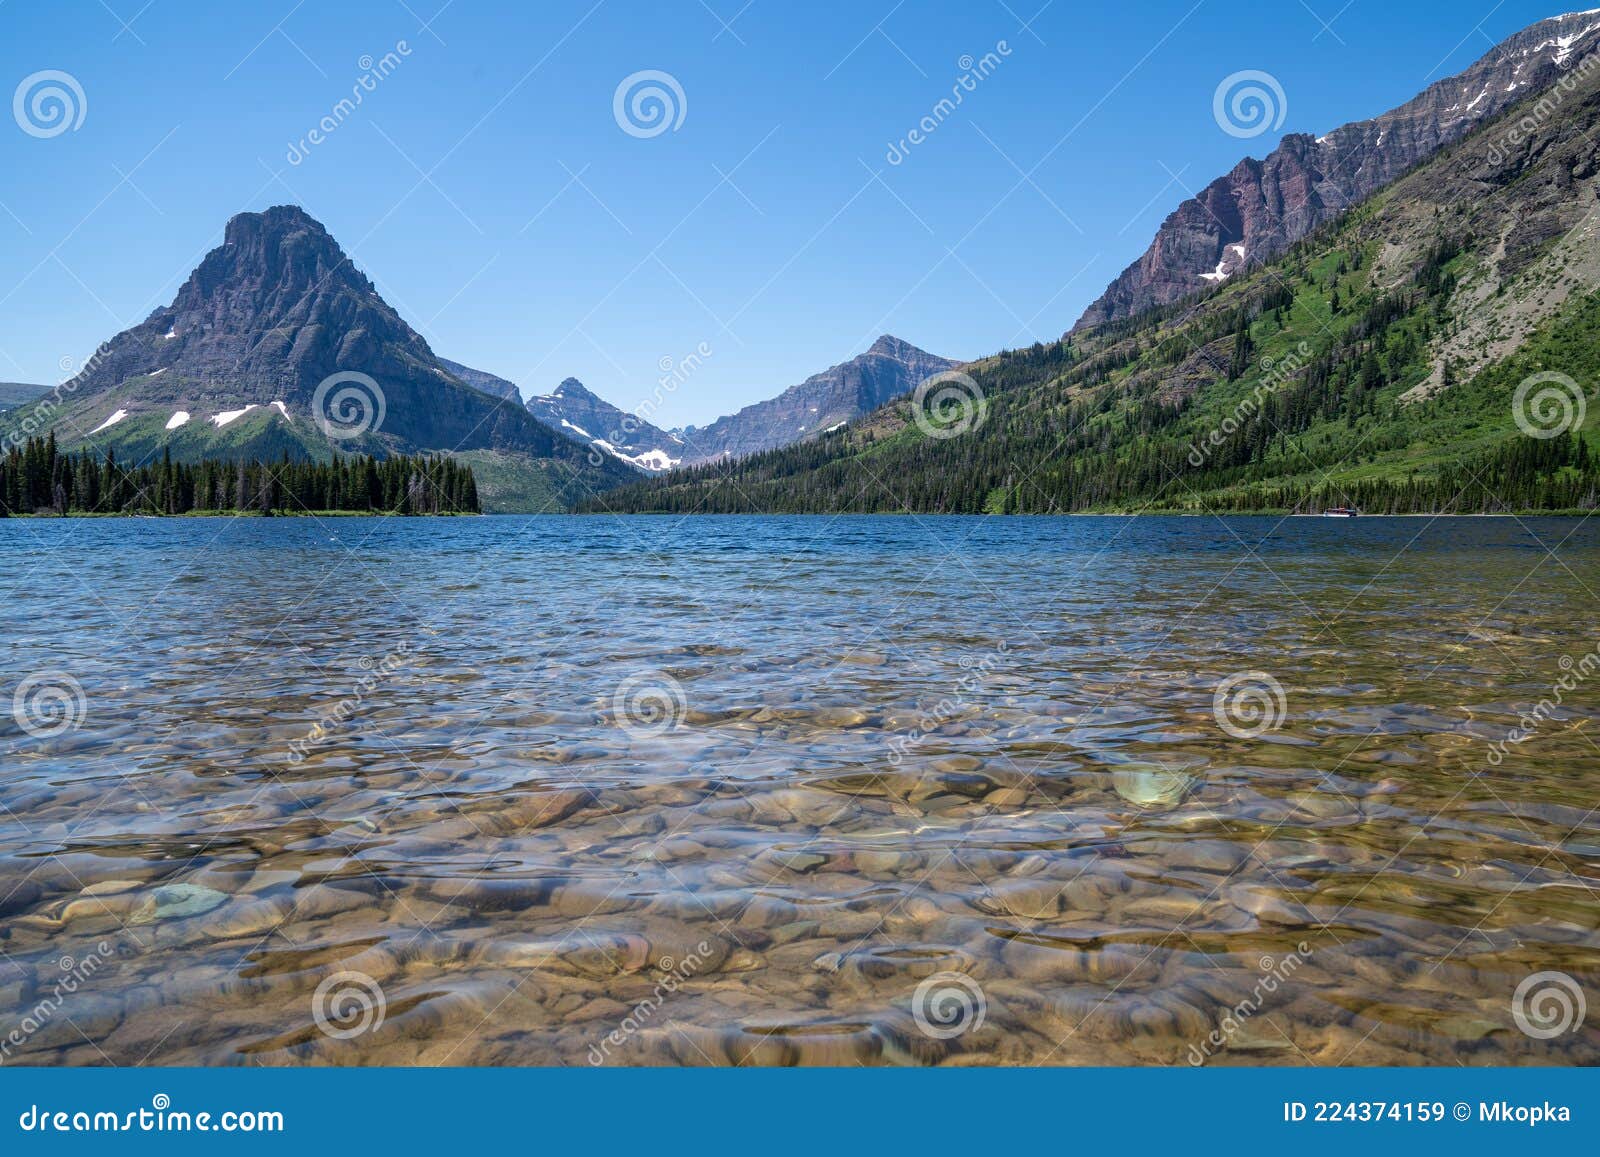 two medicine lake in glacier national park in montana usa